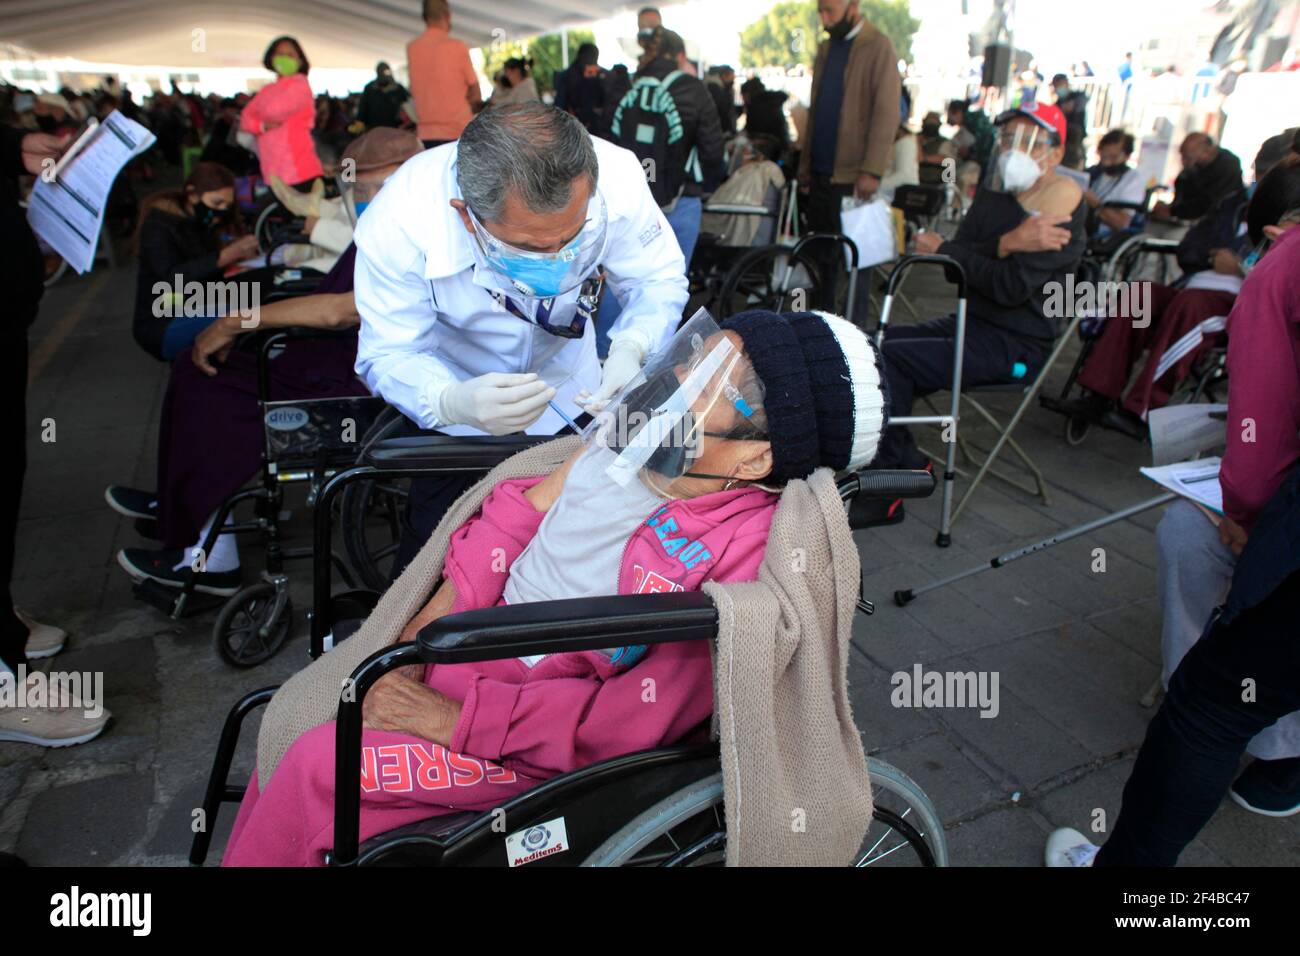 Un anziano riceve una dose di Sputnik V, durante la vaccinazione di massa del programma nazionale di vaccinazione per adulti di età superiore ai 60 anni contro la malattia di Covid-19, all'interno dell'unità sportiva di Nezahualcoyotl situata nel comune di Nezahualcoyotl, stato del Messico. Città di Nezahualcoyotl, Messico, 19 marzo 2021. Foto di Angel Morales Rizo/Eyepix/ABACAPRESS.COM Foto Stock